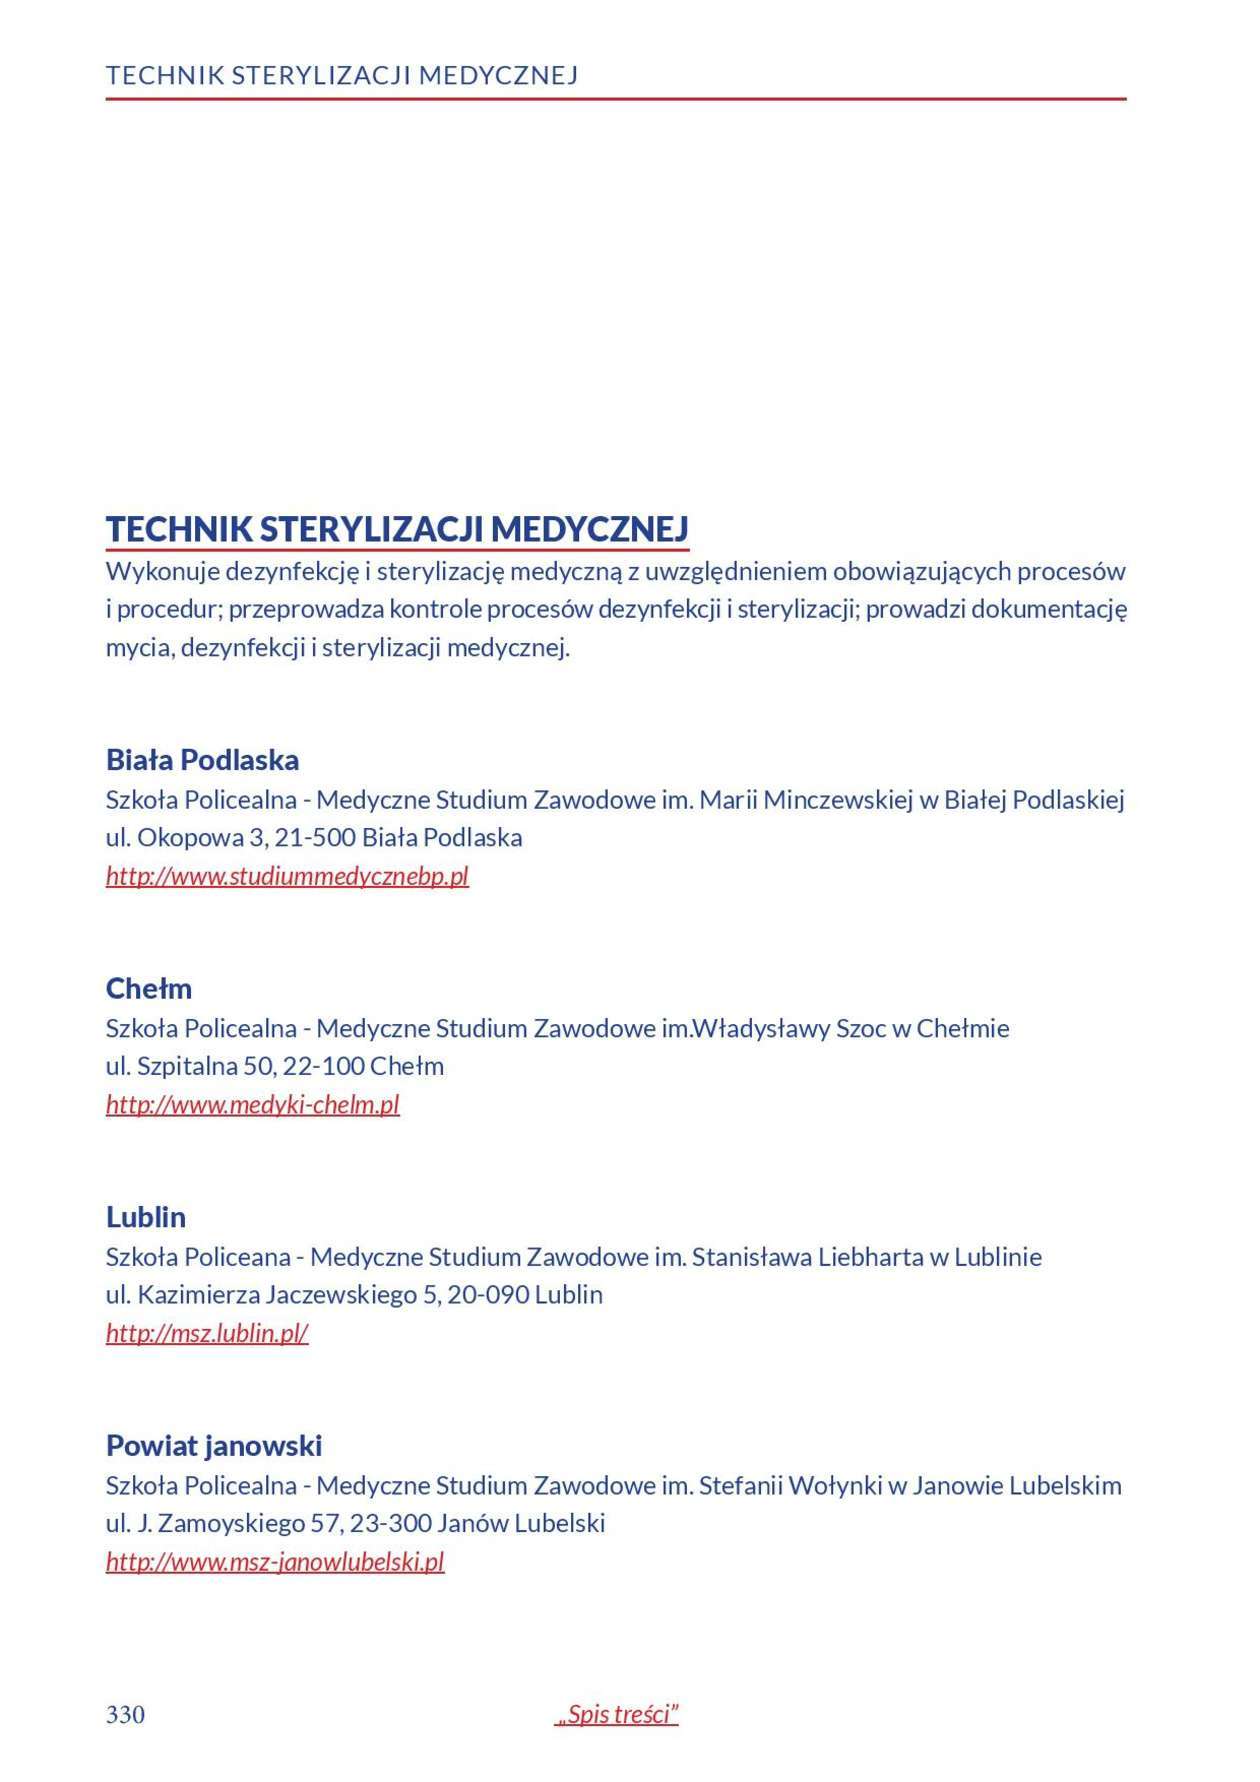  Informator o zawodach 2018/2019 w woj. lubelskim. Część 2 (zdjęcie 131) - Autor: Kuratorium Oświaty w Lublinie